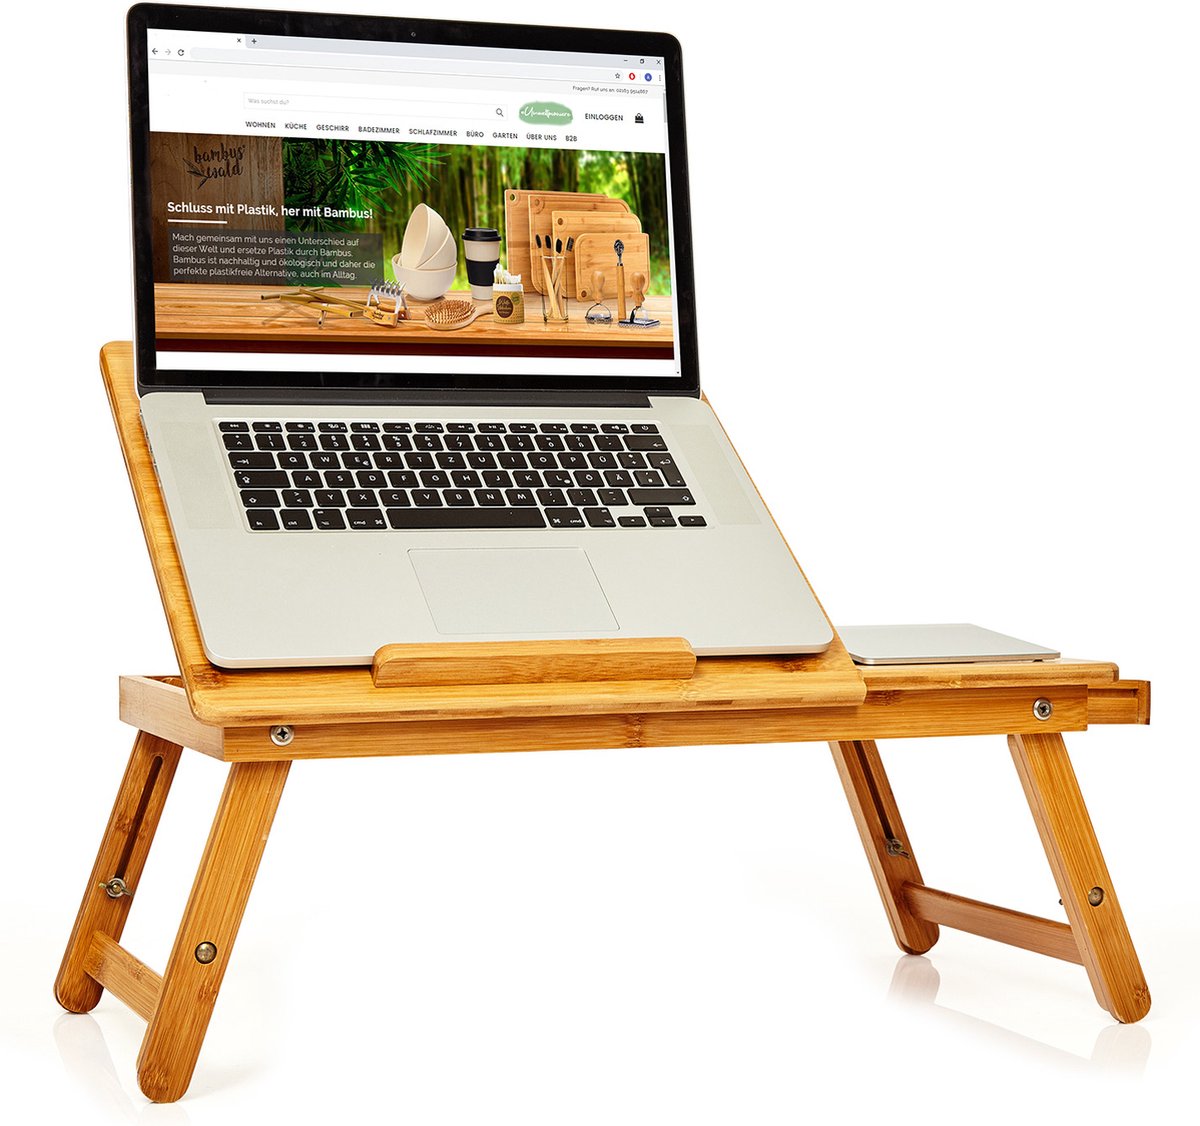 Bedtafeltje opvouwbaar laptoptafeltje in hoogte verstelbaar 54x21-29x35cm(BxHxD) bamboe